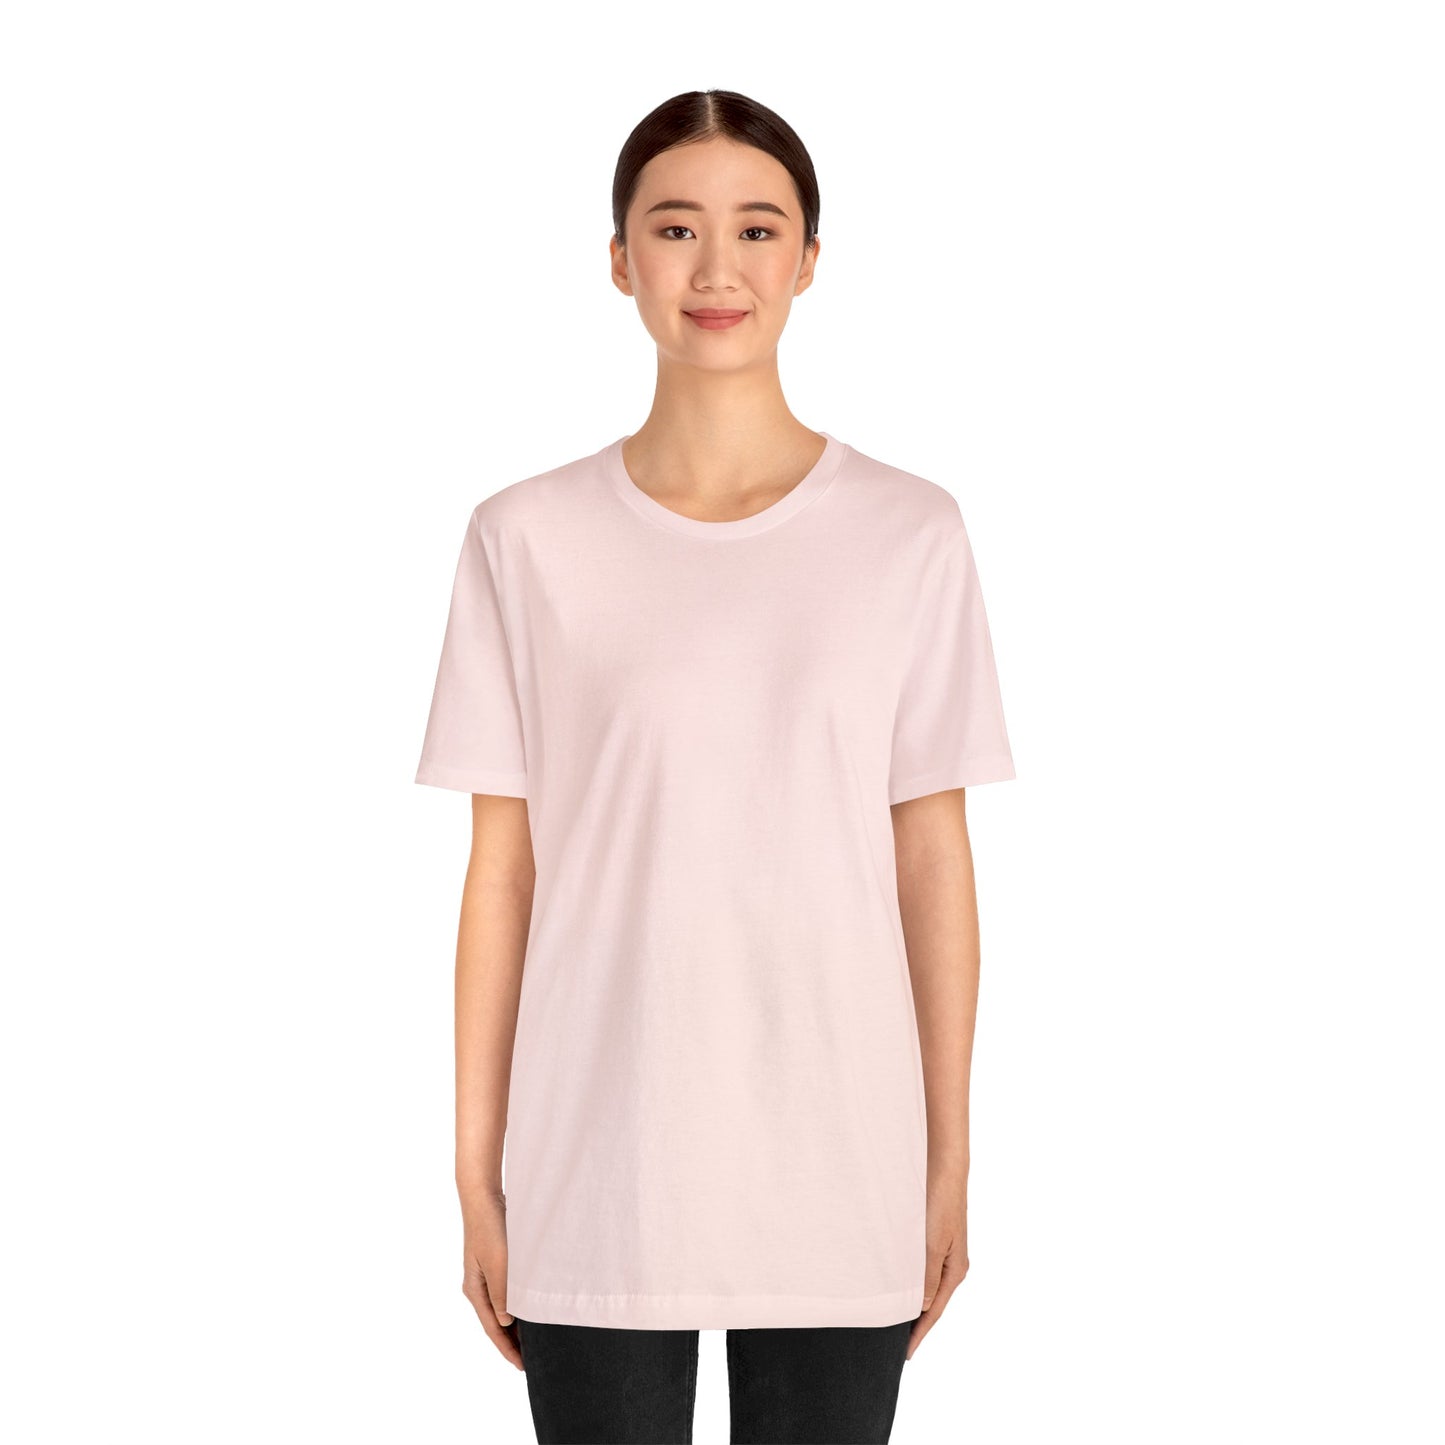 Unisex Jersey Short Sleeve Soft Pink T Shirt